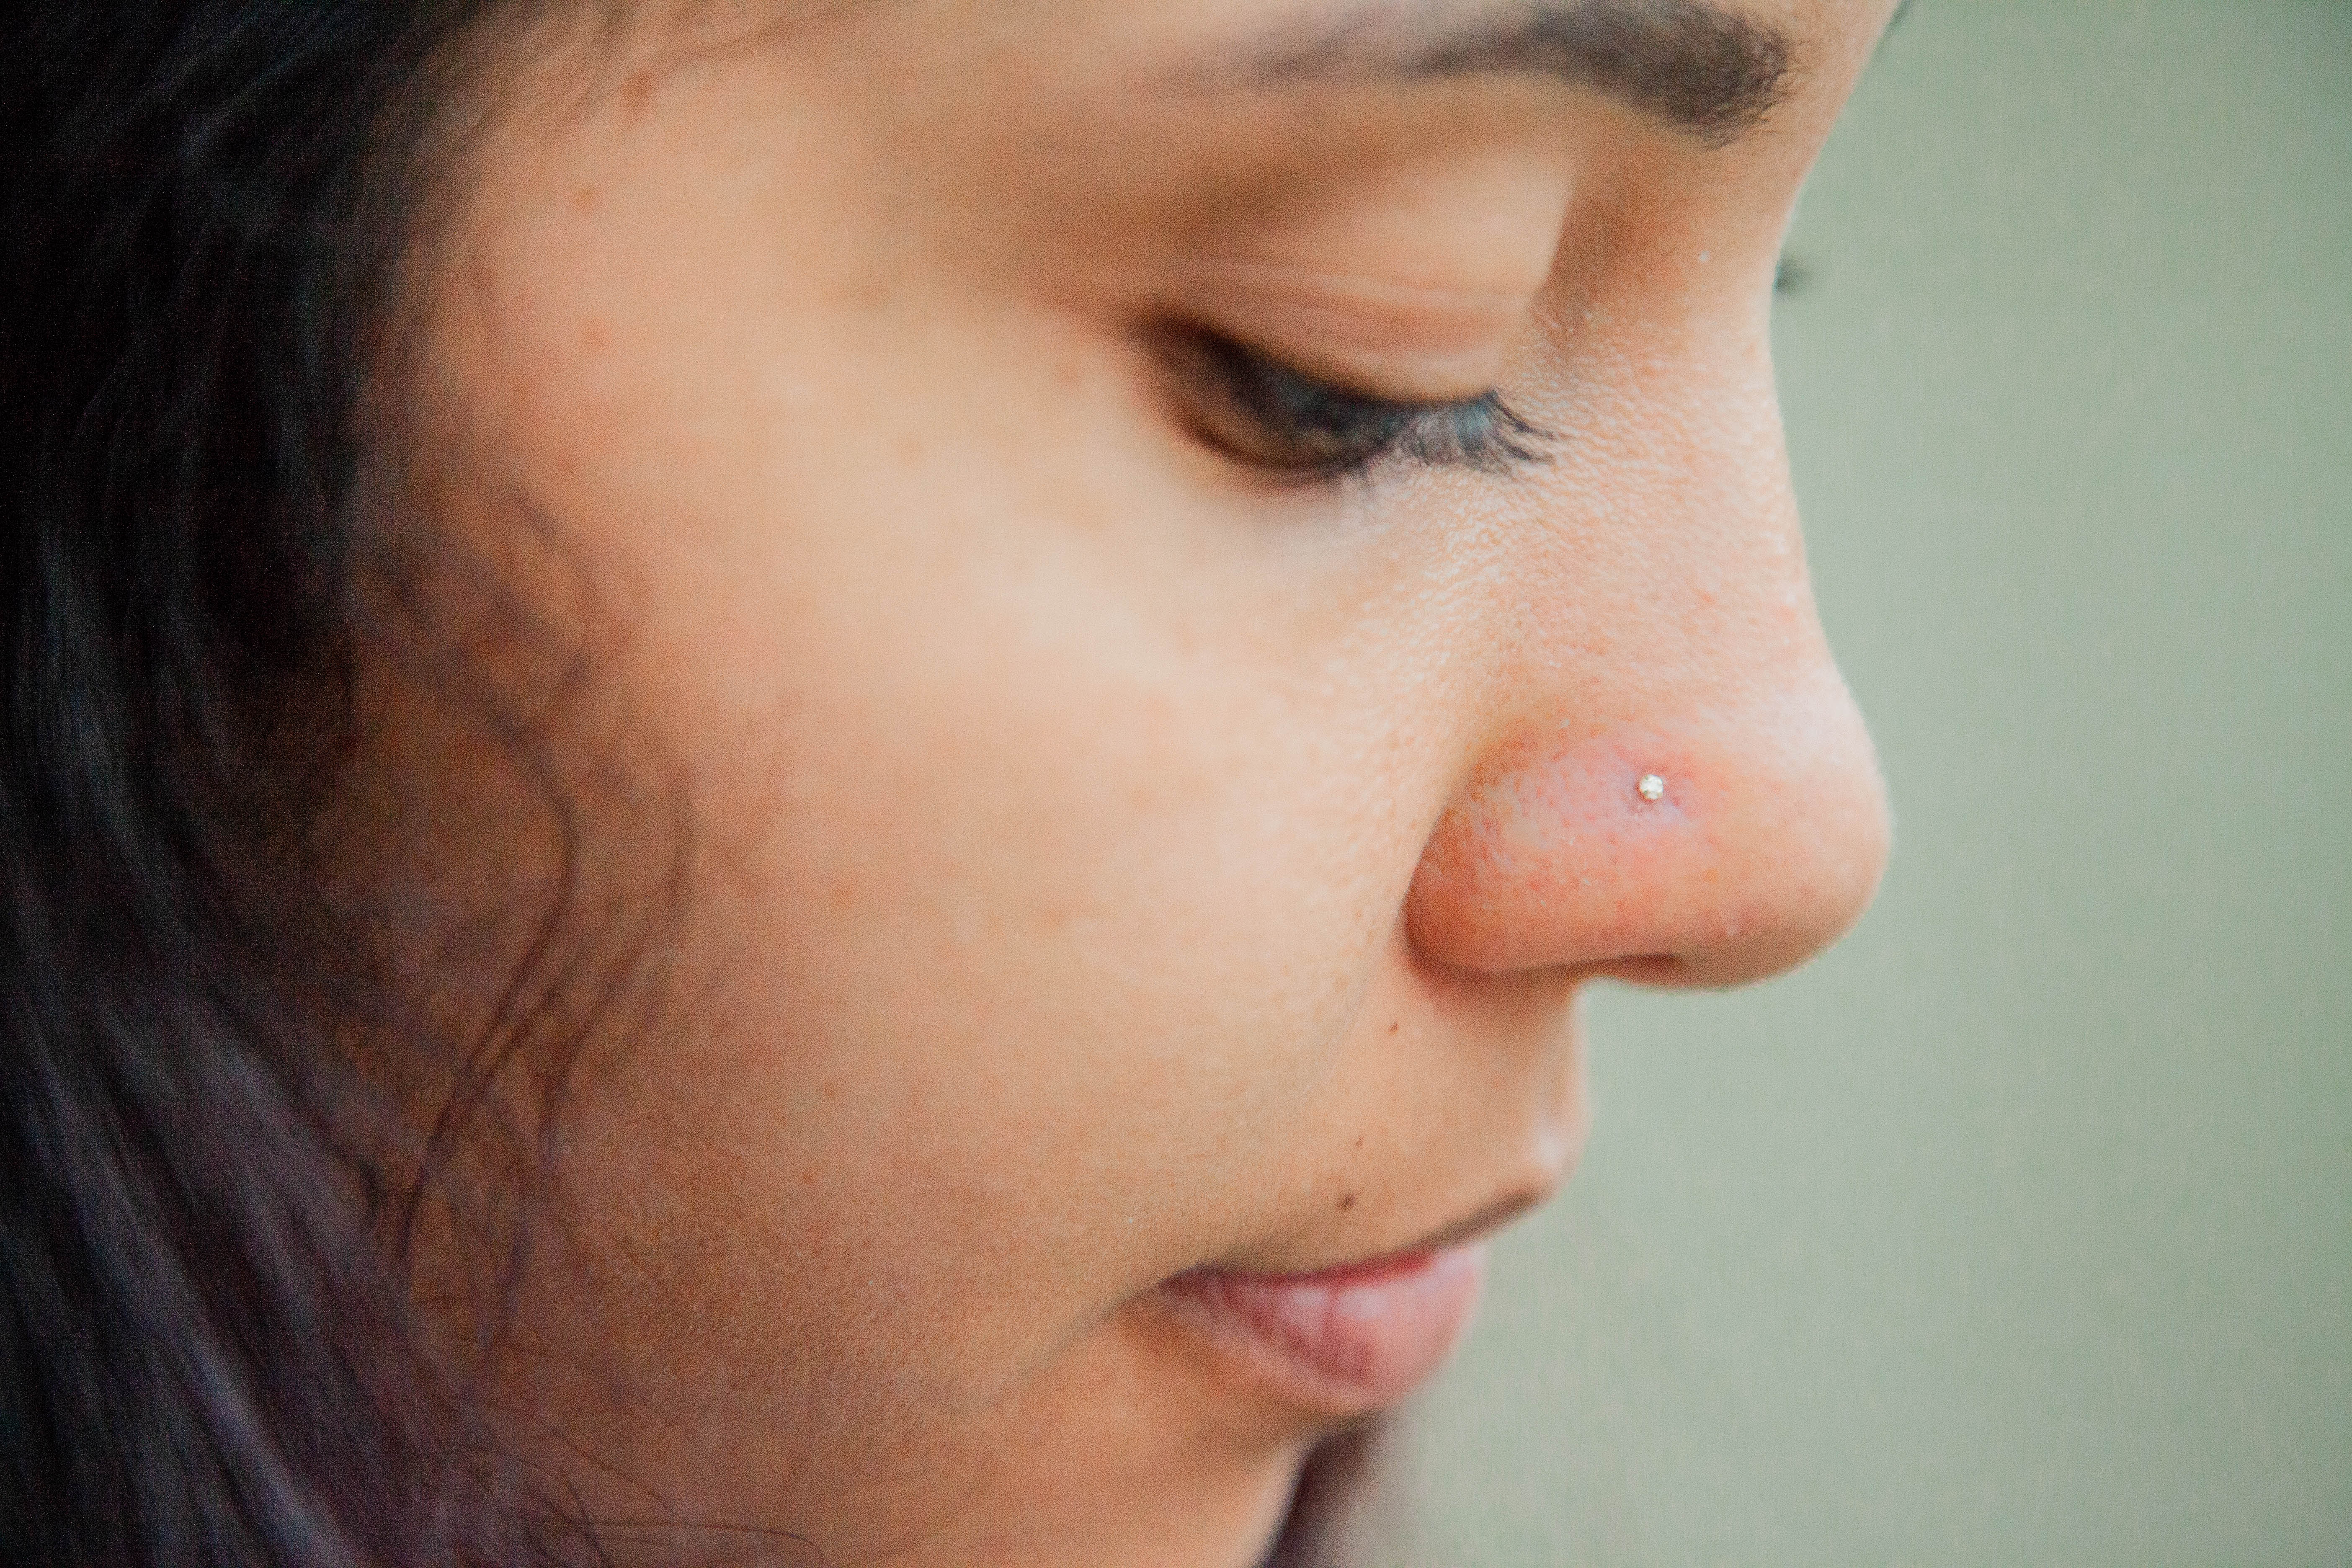 Buy TINY Diamond Nose Stud 18g Nose Stud, Gold Nose Stud, Rose Gold Nose  Stud, 18 Gauge Nose Ring, Gold Diamond Nose Stud, Small Nose Stud Online in  India - Etsy